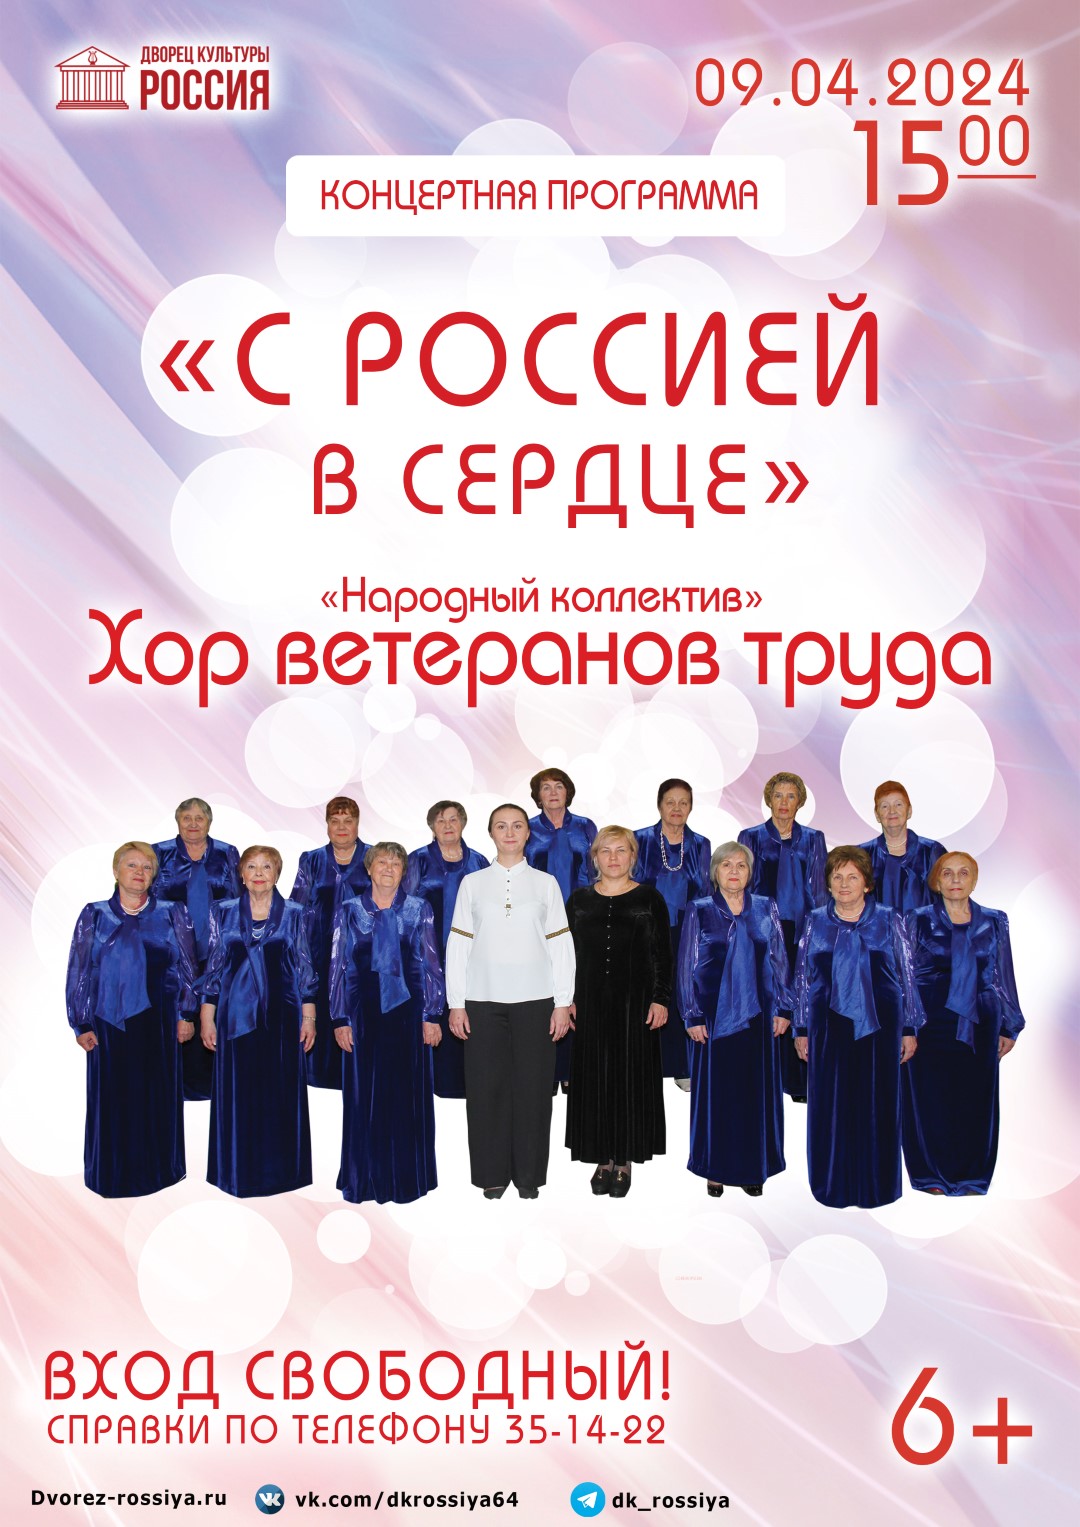 Концерт «Народного коллектива» Хора ветеранов труда «С Россией в сердце»